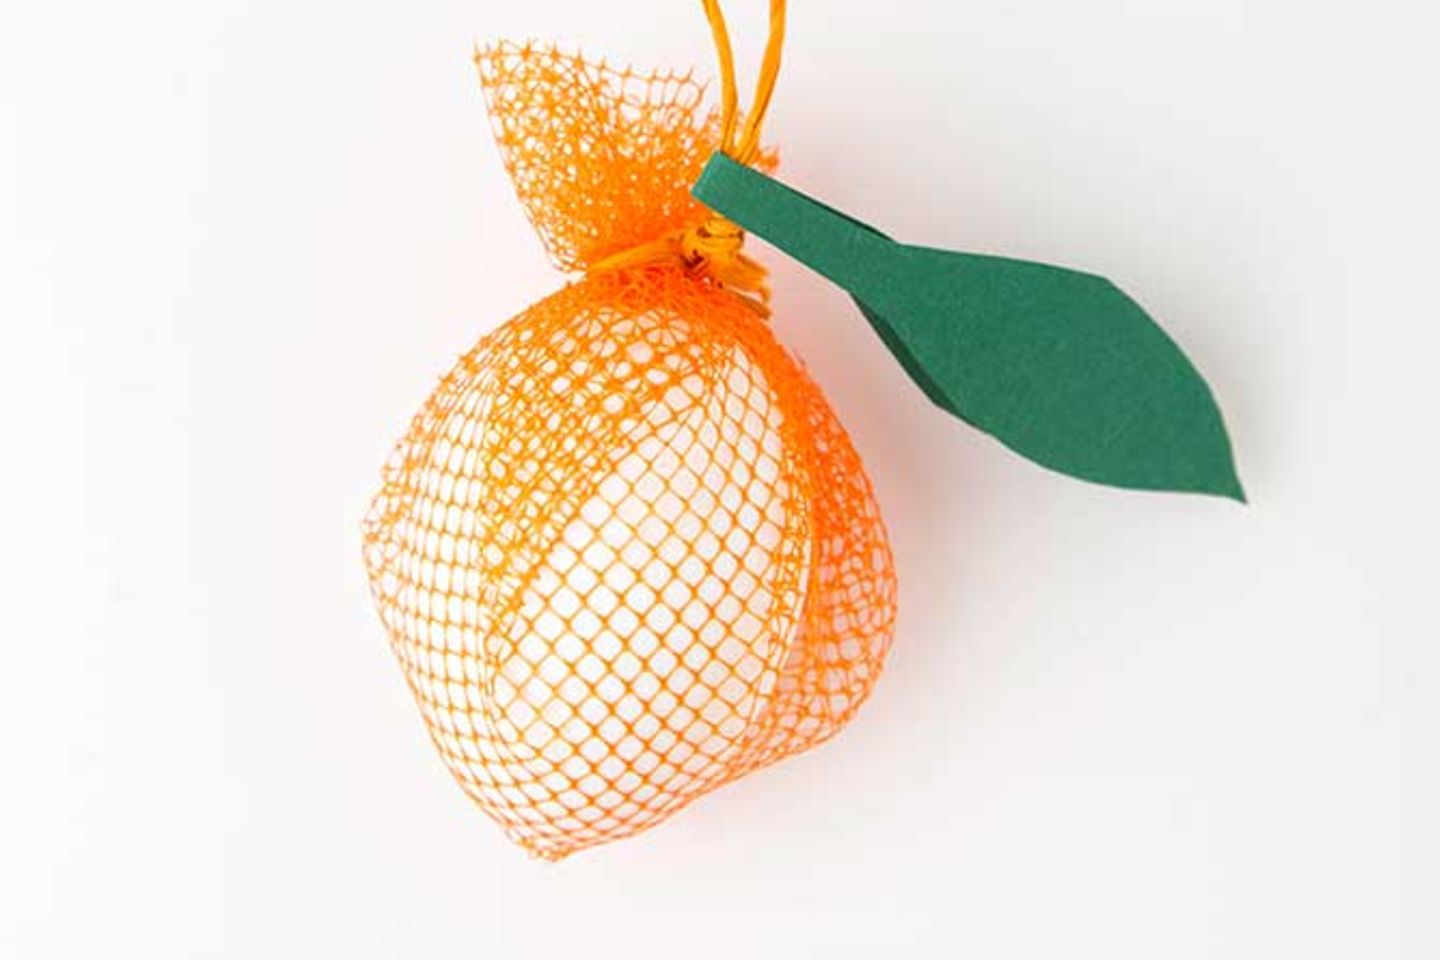 Für die Orange zwei über einen Steg verbundene Blätter ausschneiden, in der Mitte knicken und einfach über der Aufhängung baumeln lassen.